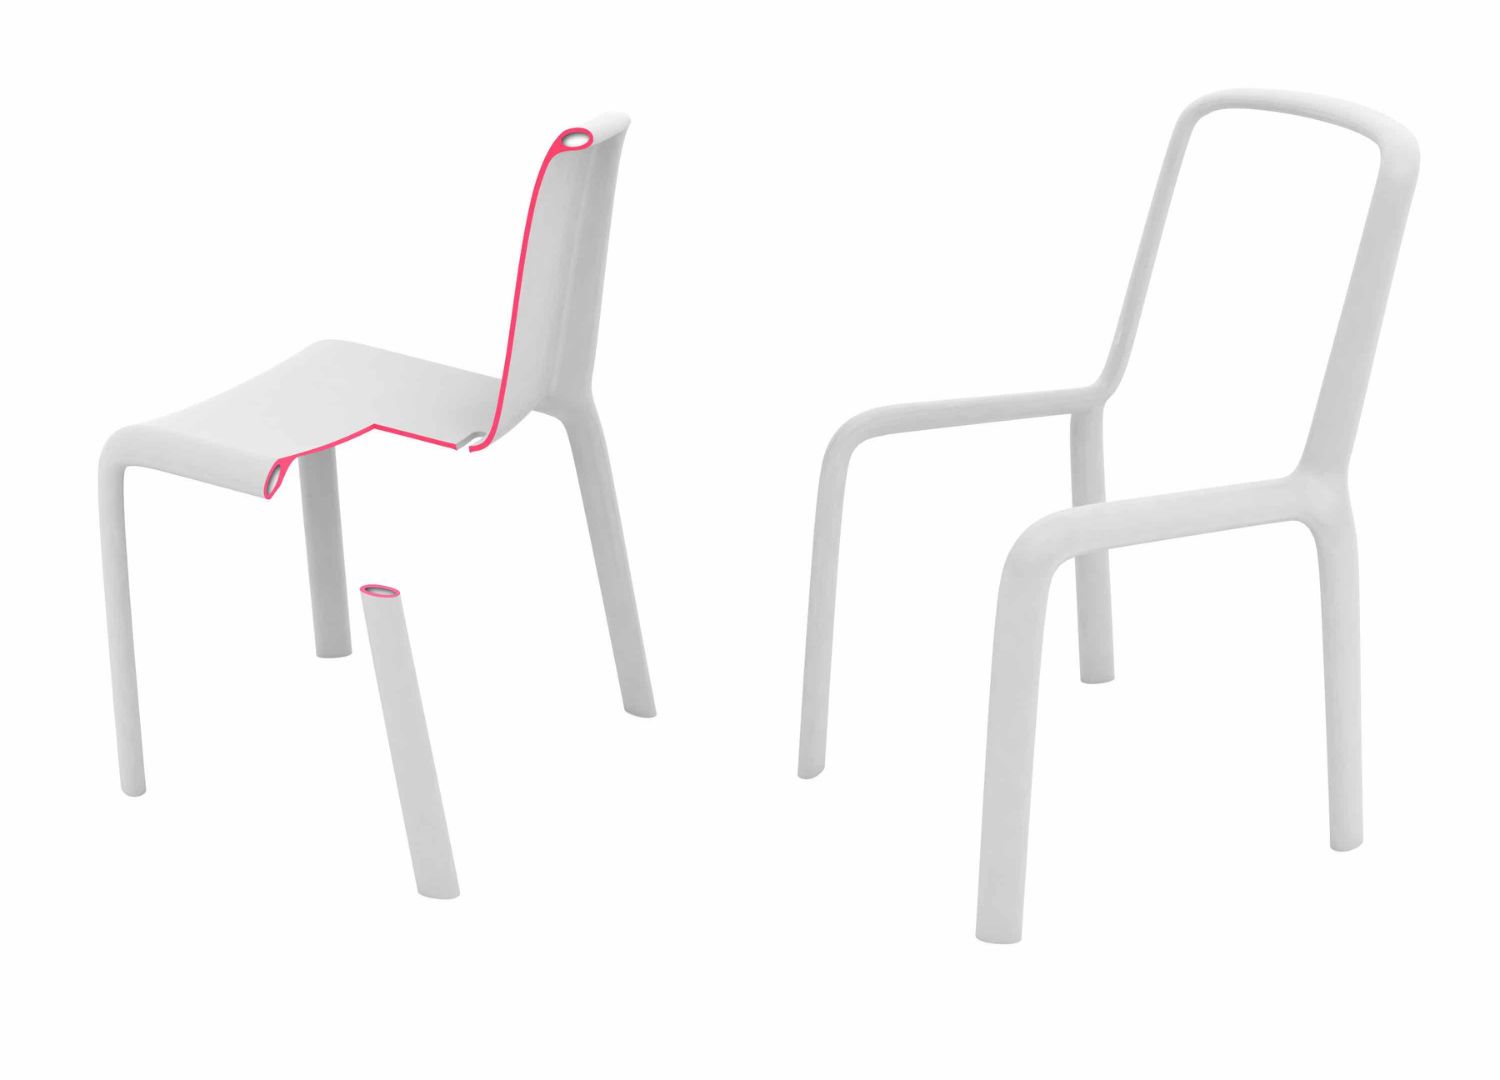 6.-Snow-chair-by-Odo-Fioravanti-x-Pedrali-2008